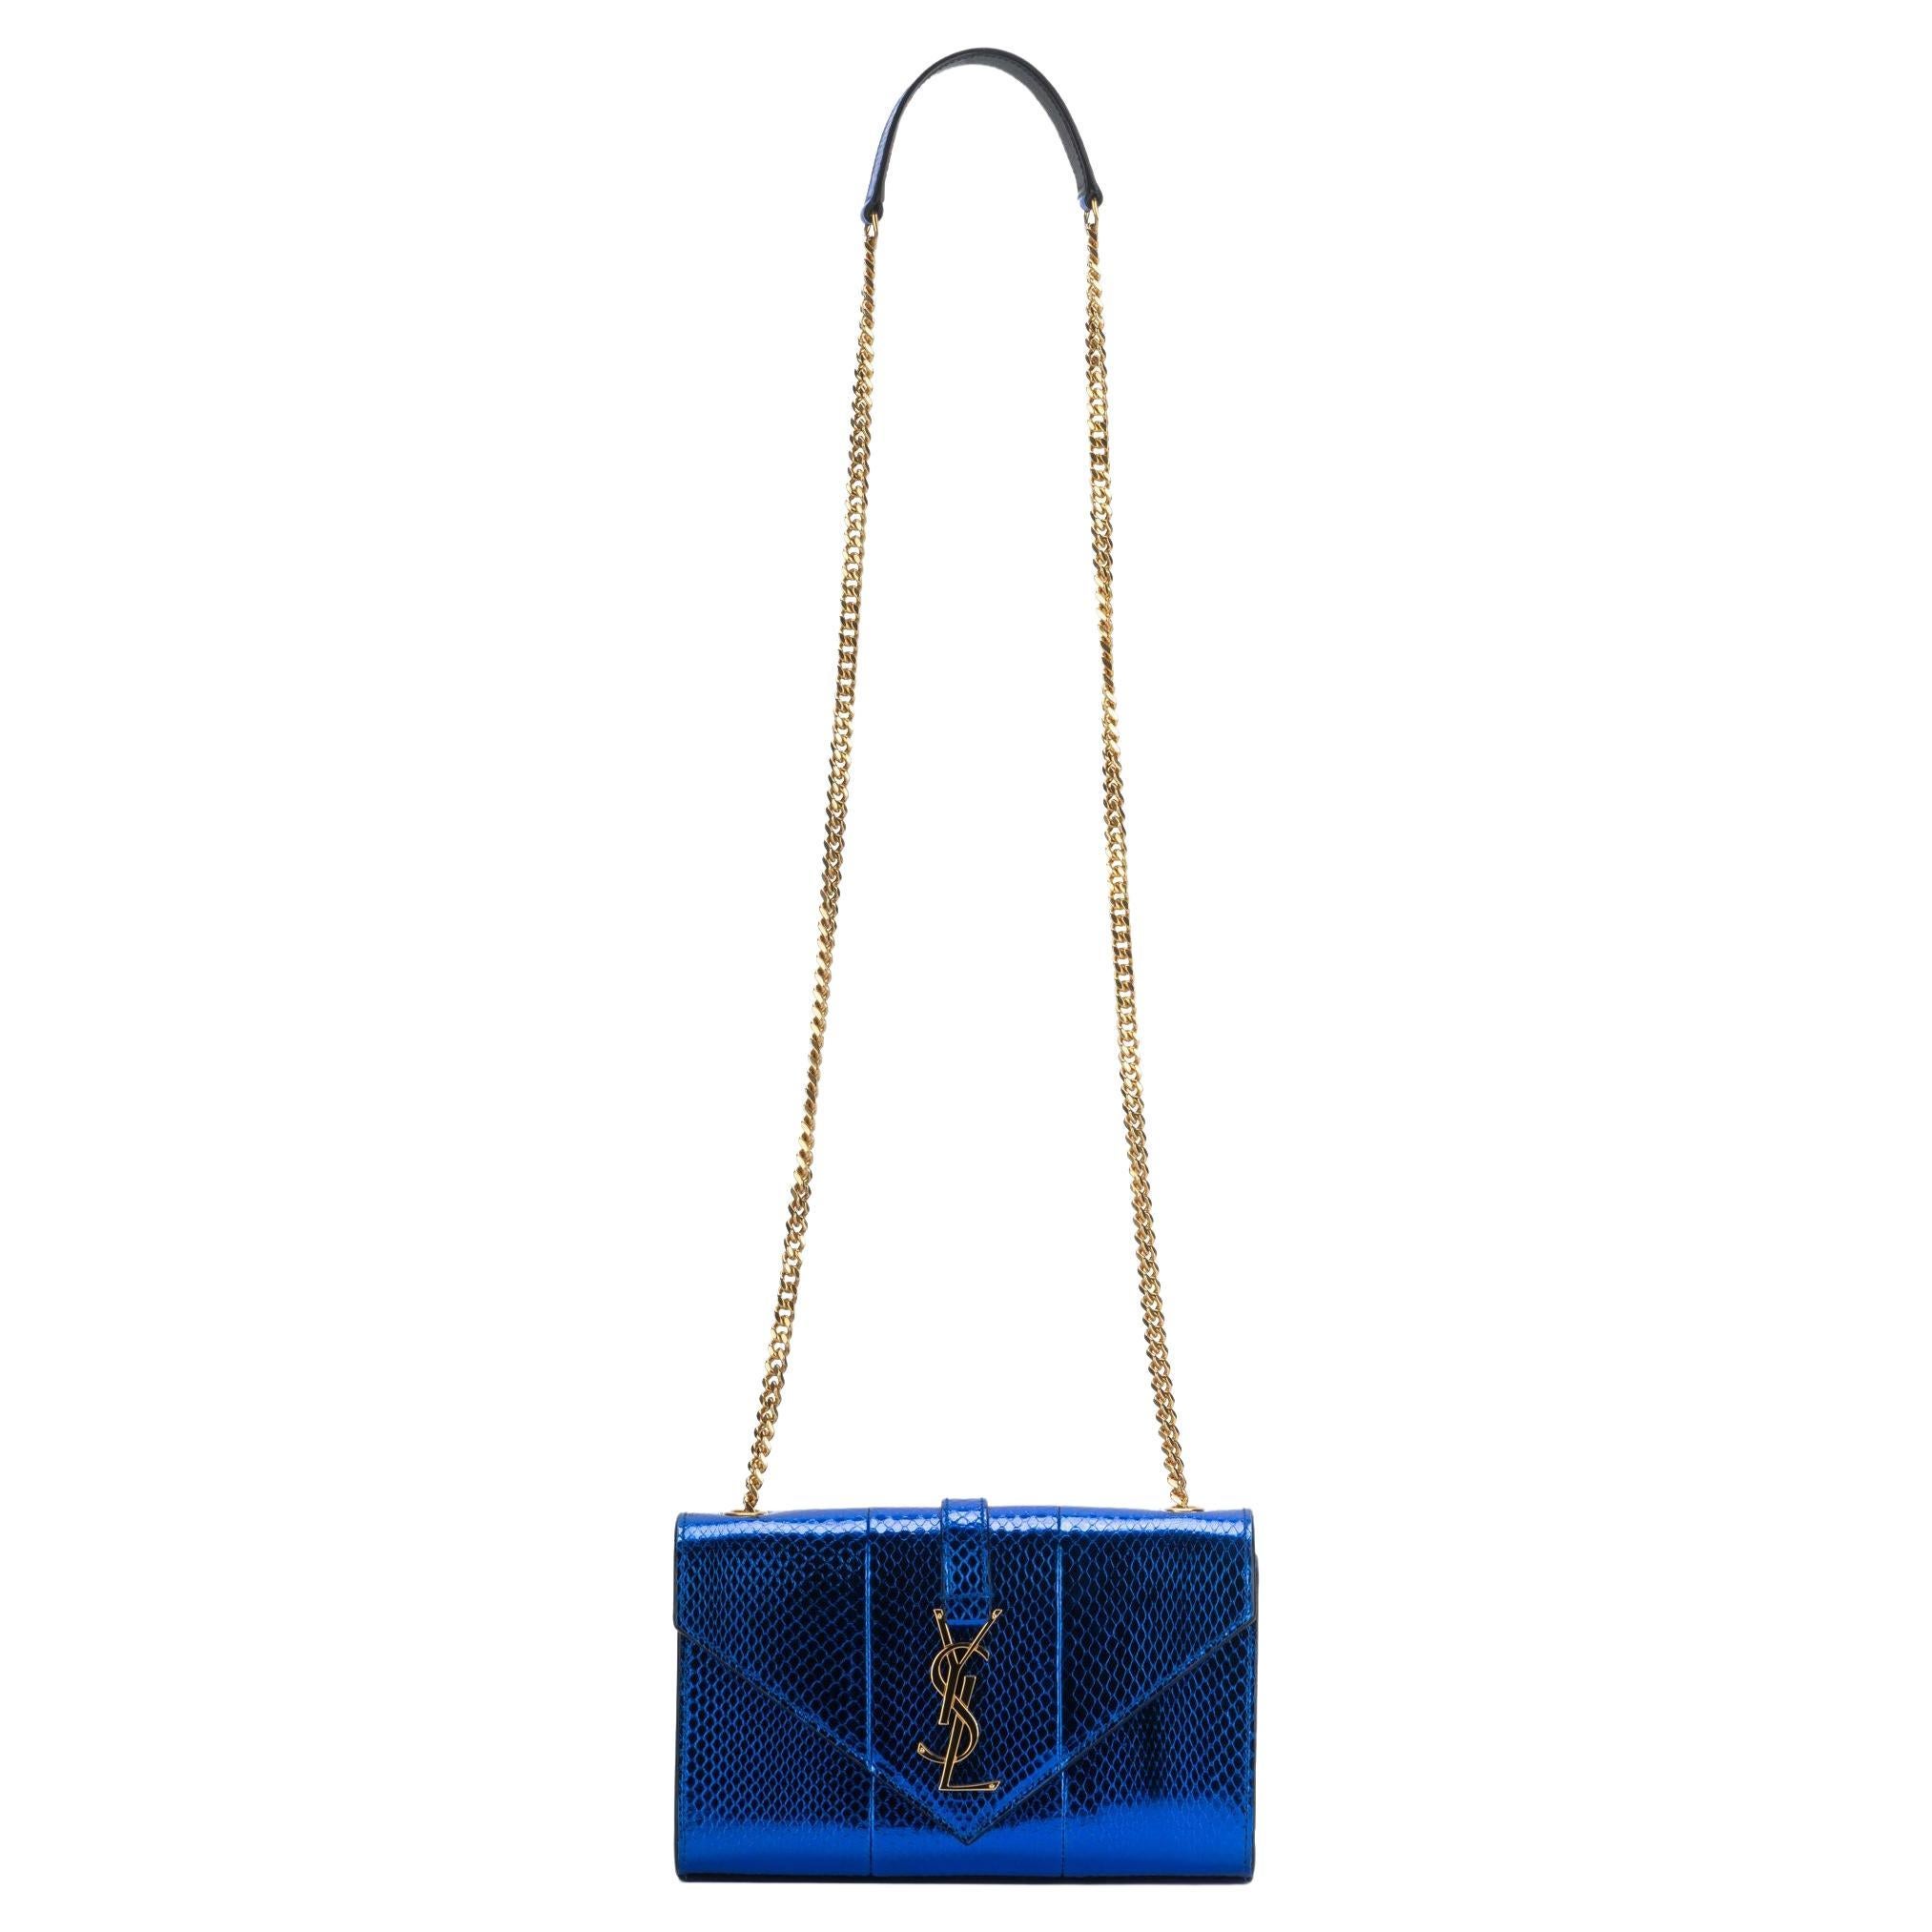 Yves Saint Laurent New Blue Python Cross Body Bag